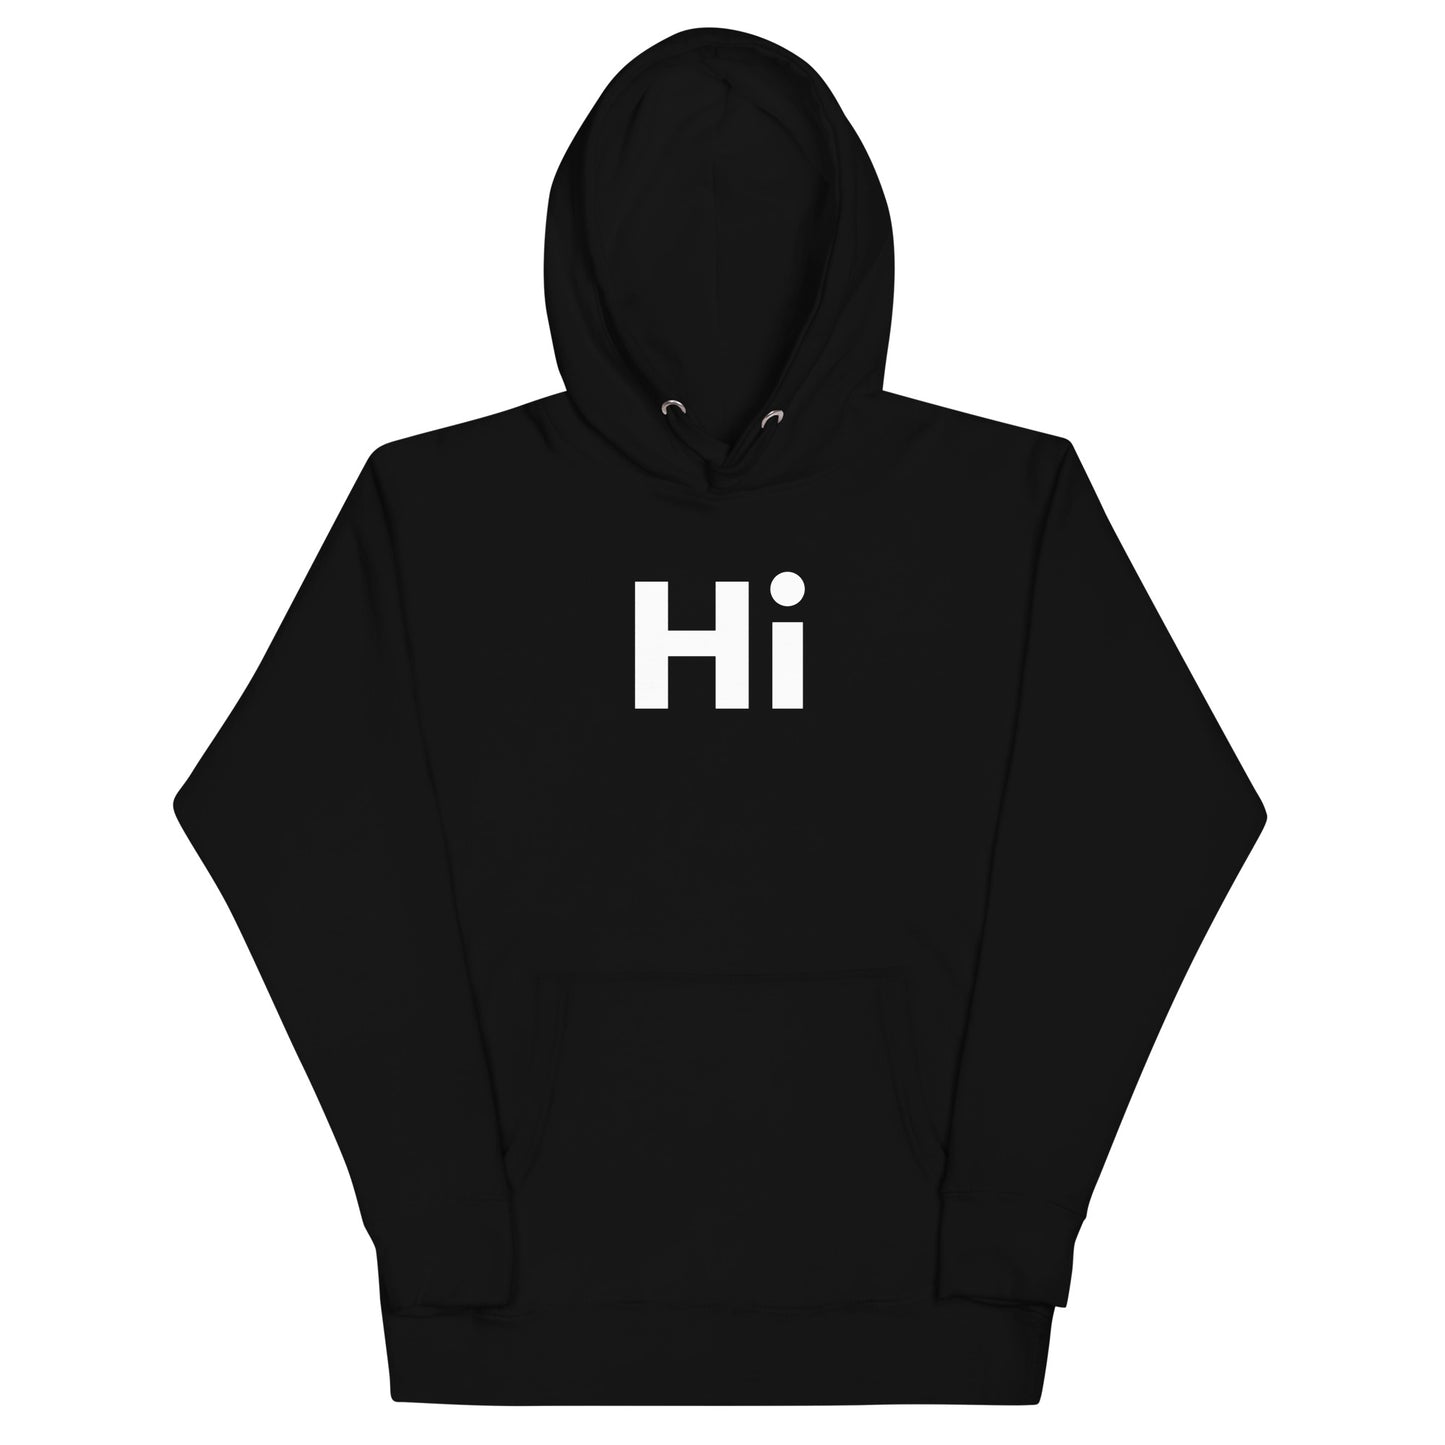 Hi Hoodie in Black by Happy interactions